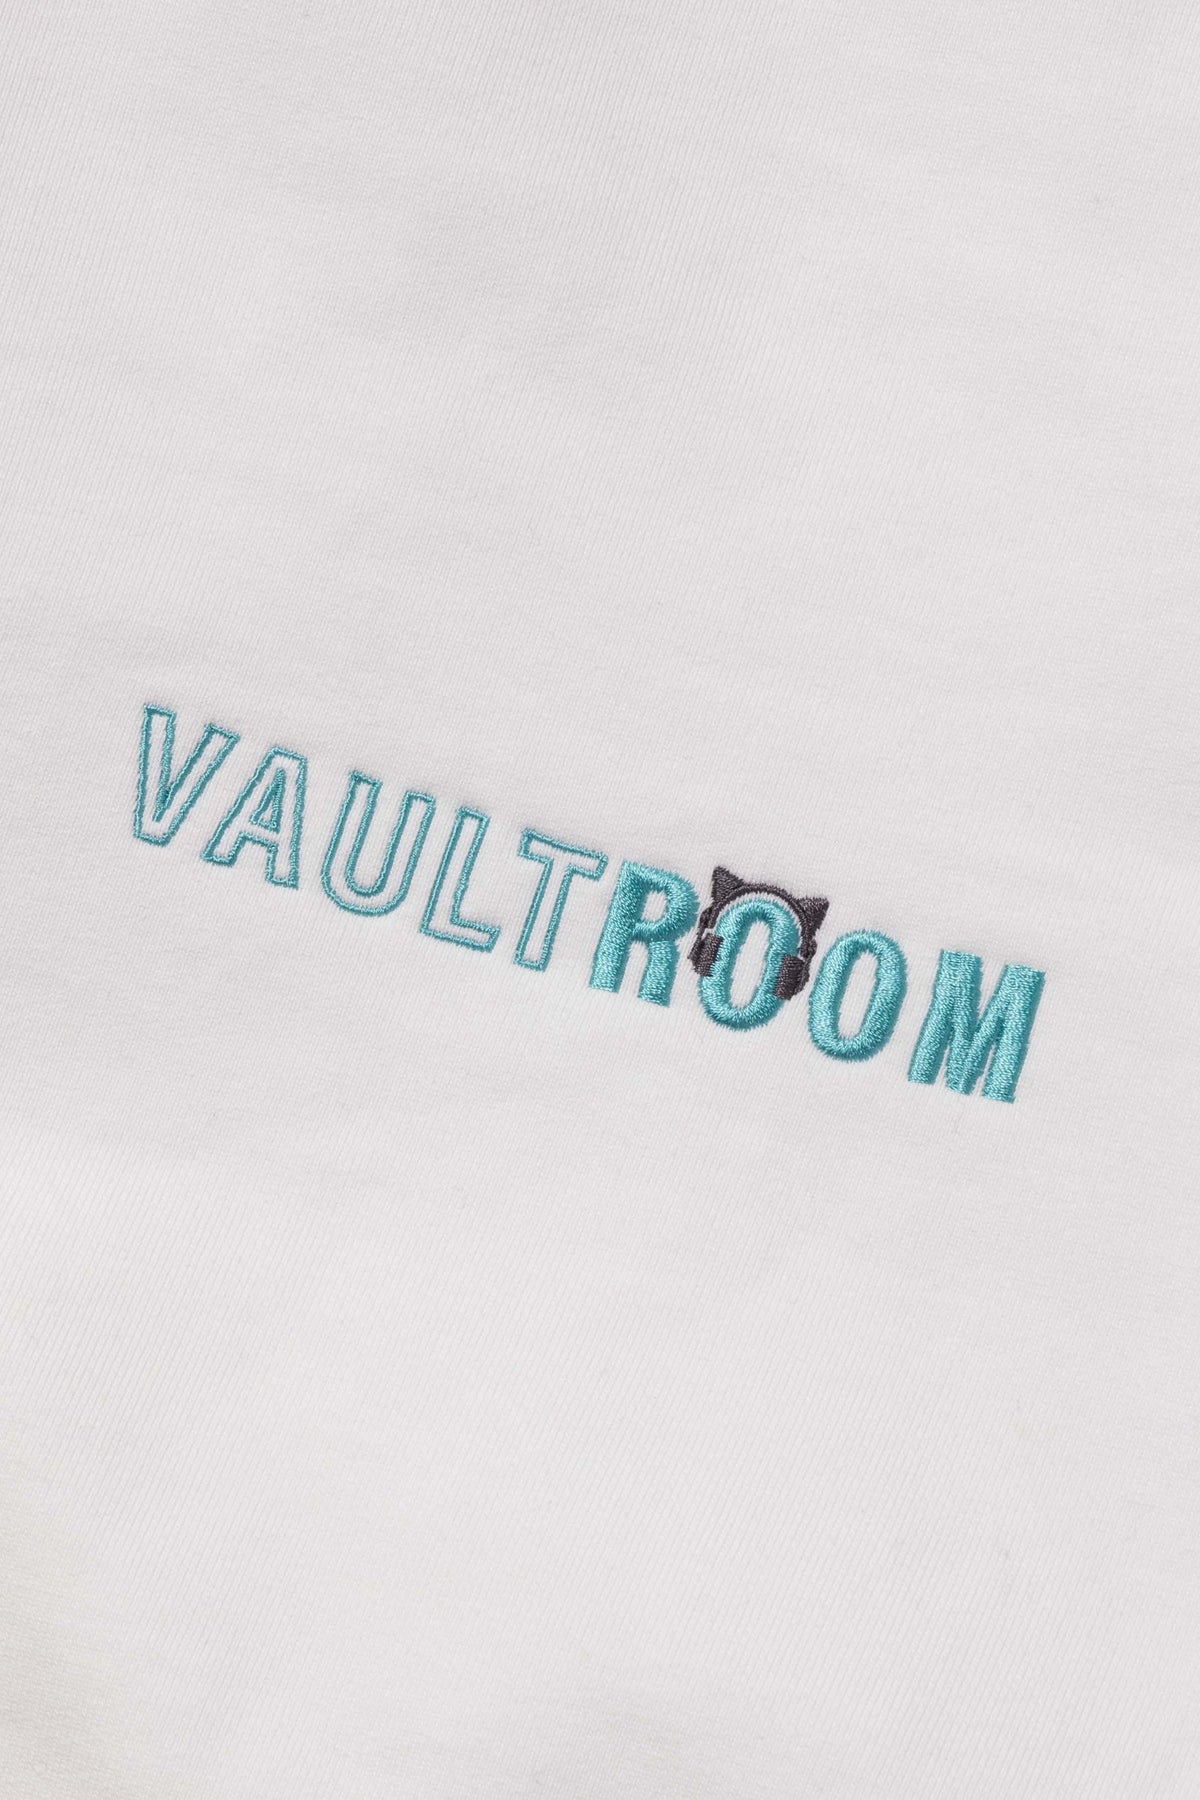 VAULTROOM × NEKOMUGI TORORO HOODIE / WHT